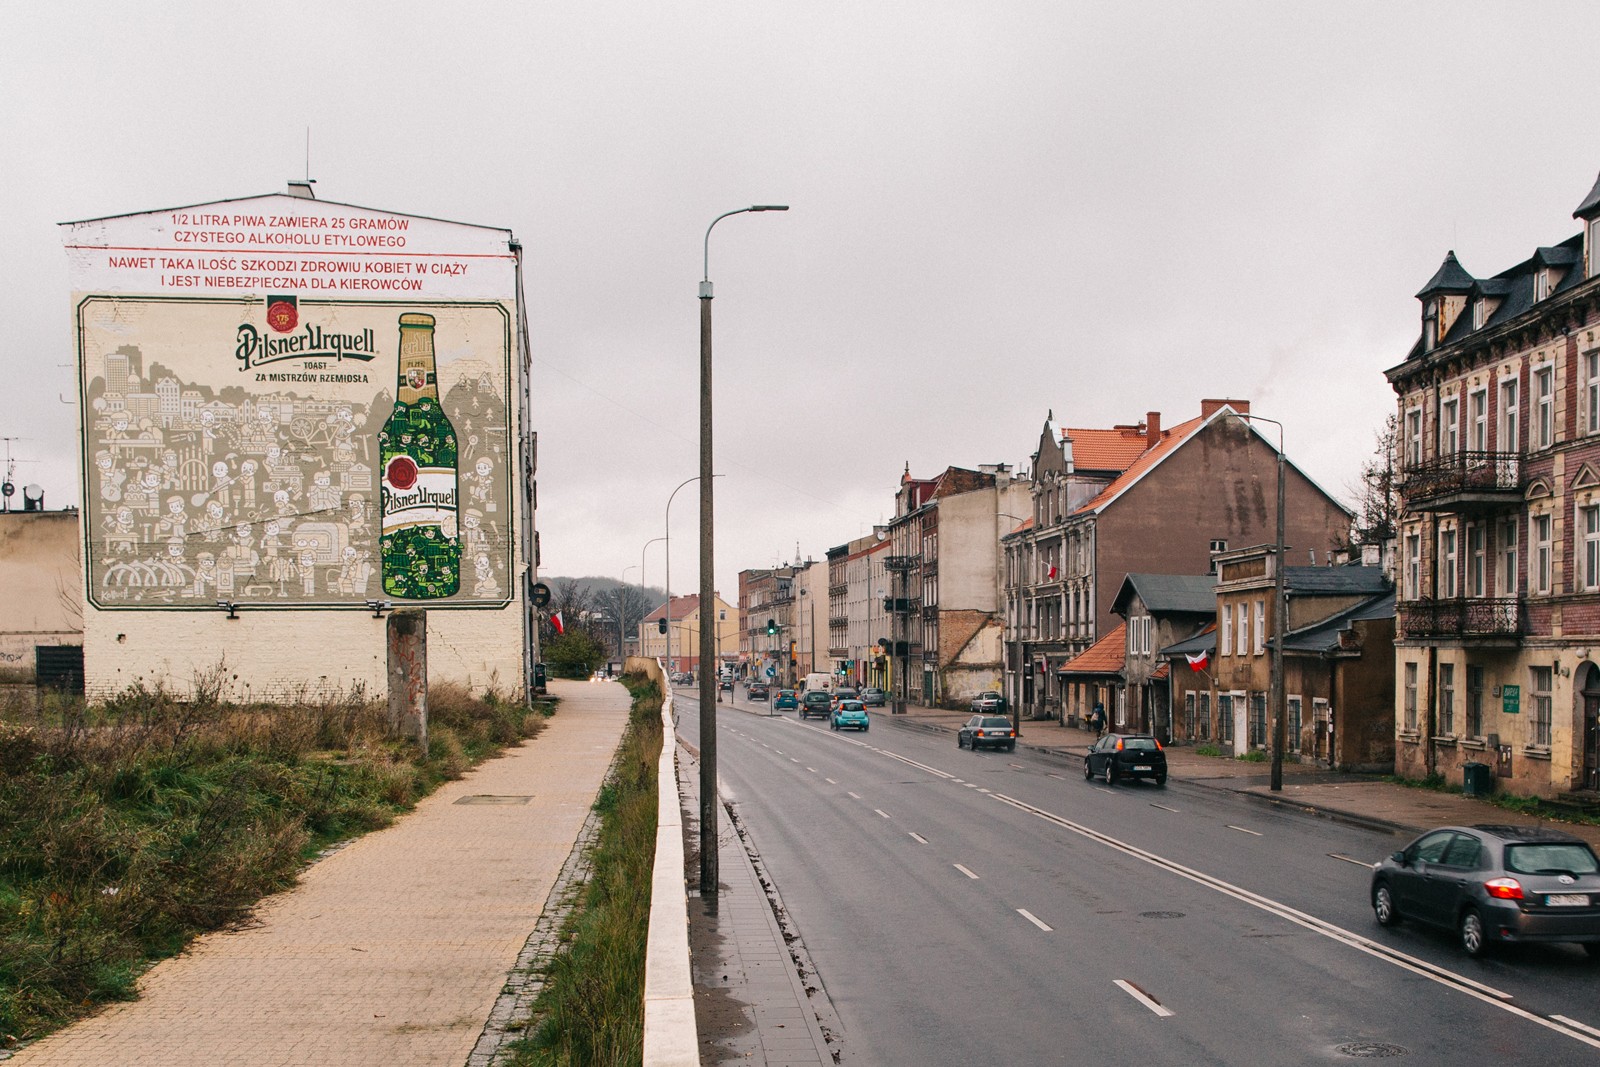 advertising mural in gdansk Saint Adalbert's route for Kompania Piwowarska | Pilsner Urquell | Portfolio